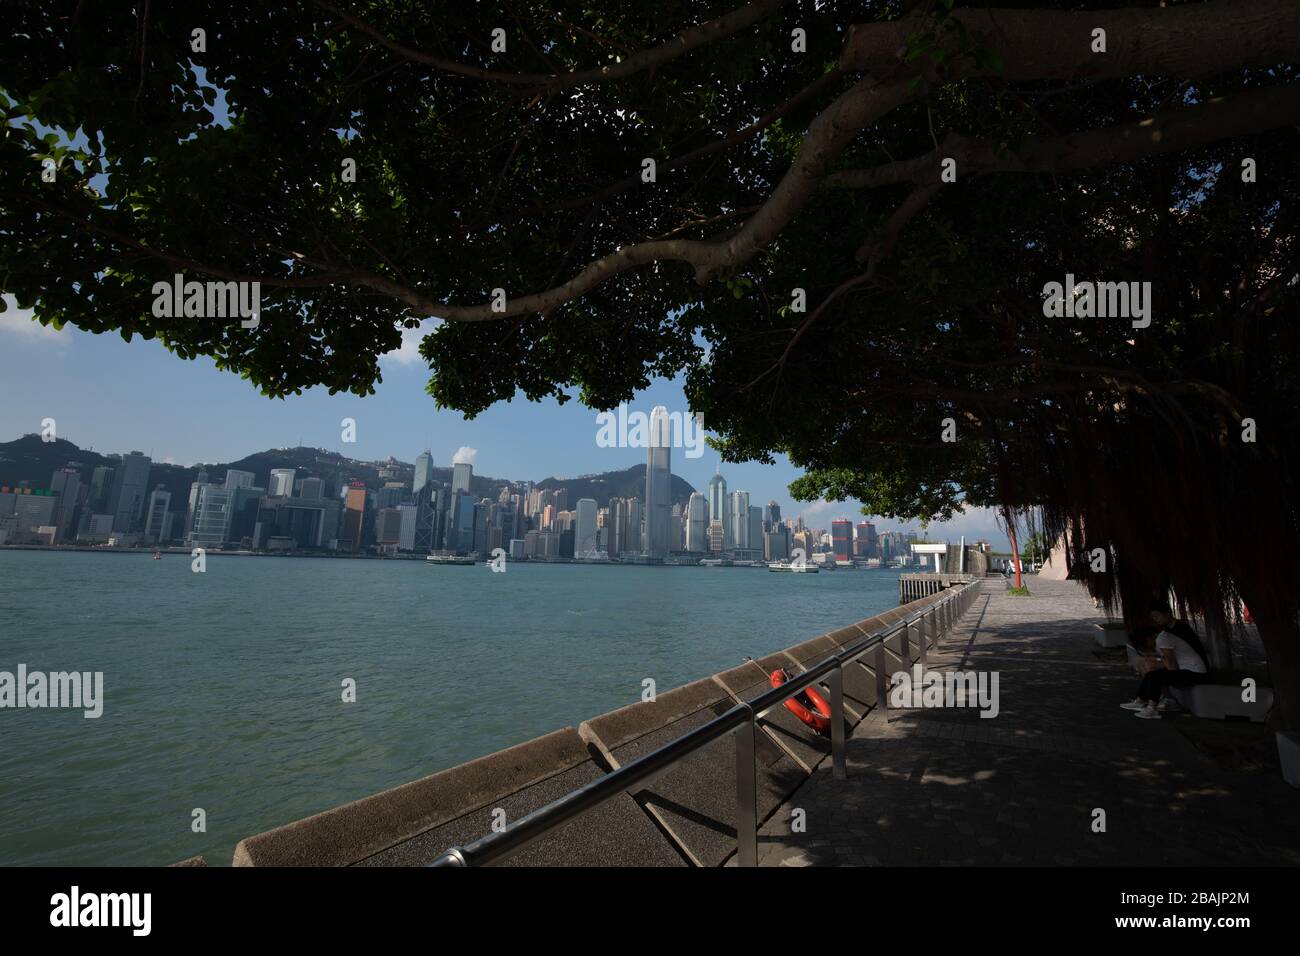 Les gens qui font une promenade le long du port de Hong Kong dans l'après-midi avec les gratte-ciel en arrière-plan Banque D'Images